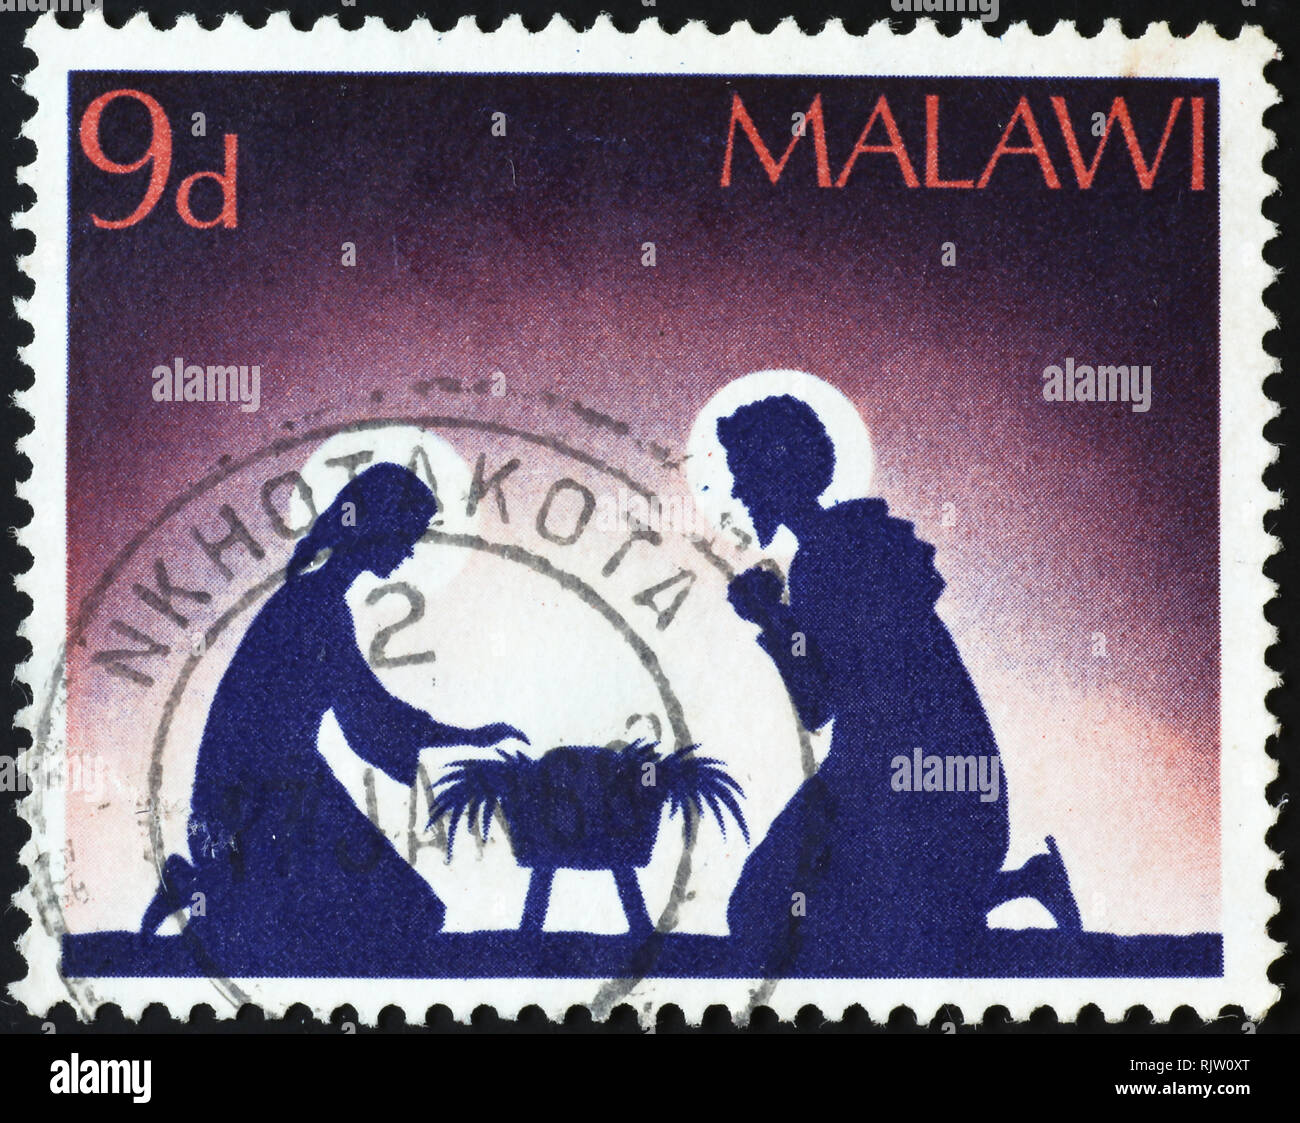 La famille sacrée sur timbre-poste du Malawi Banque D'Images